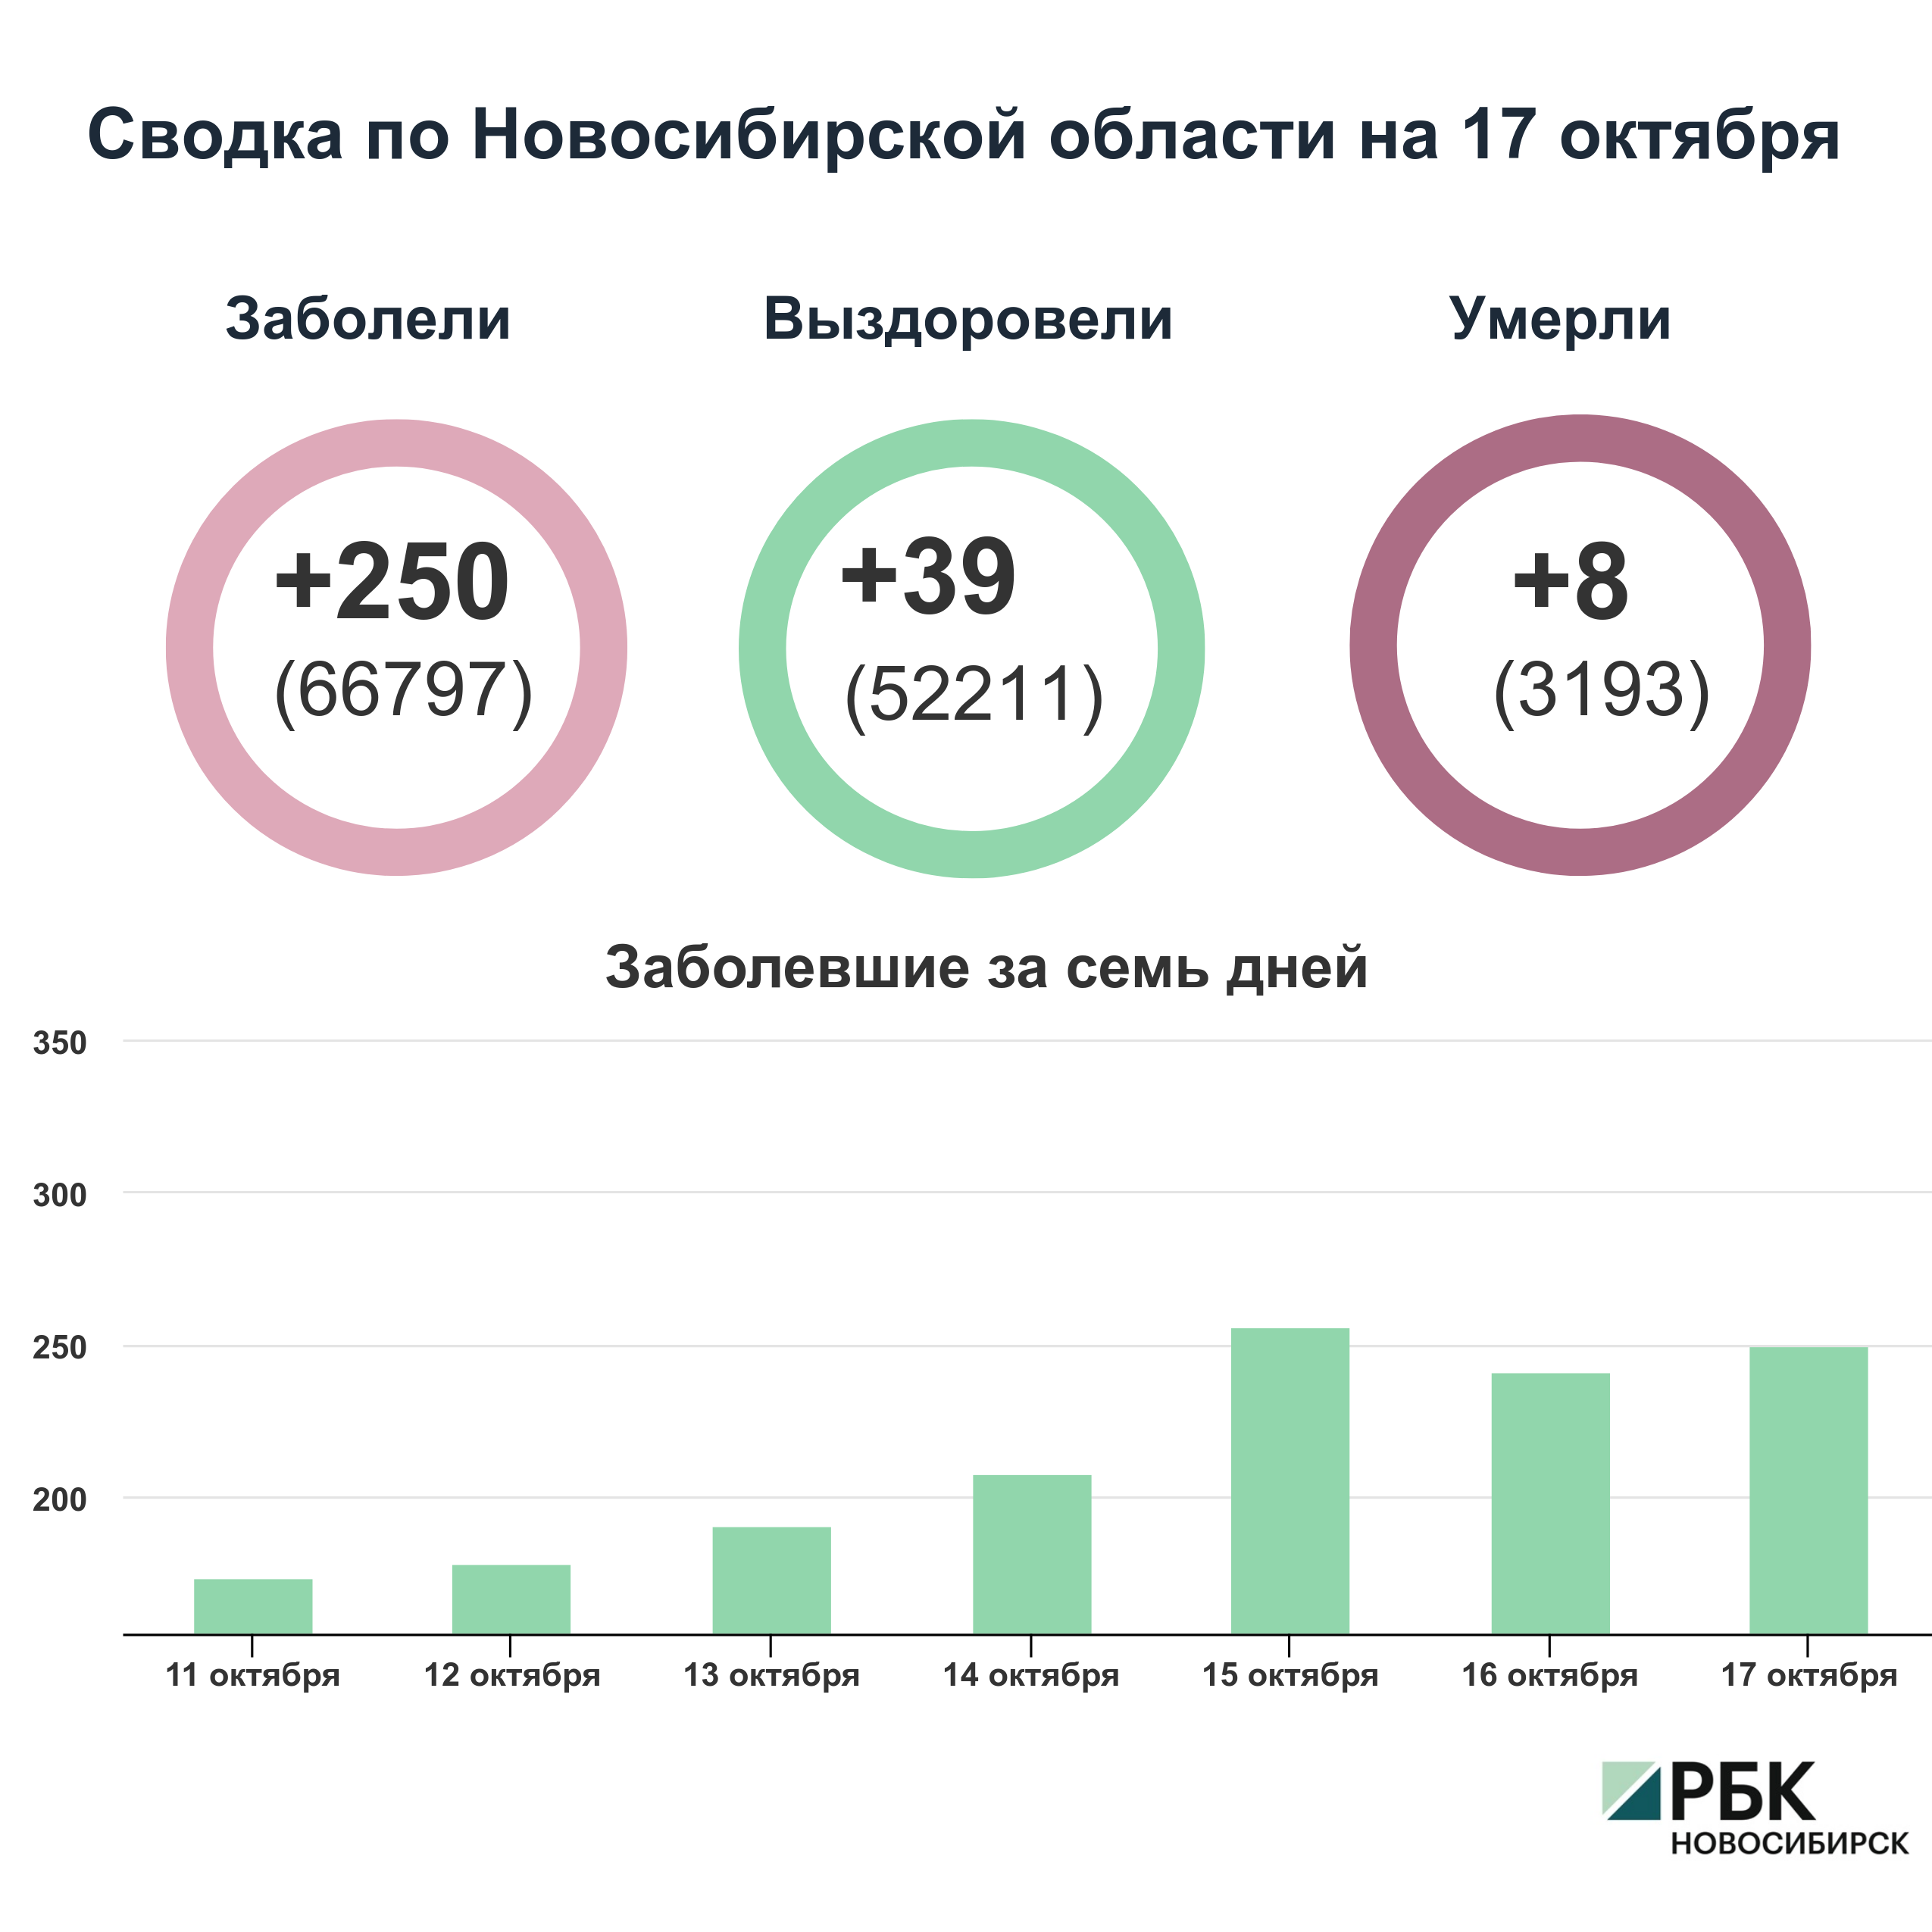 Коронавирус в Новосибирске: сводка на 17 октября